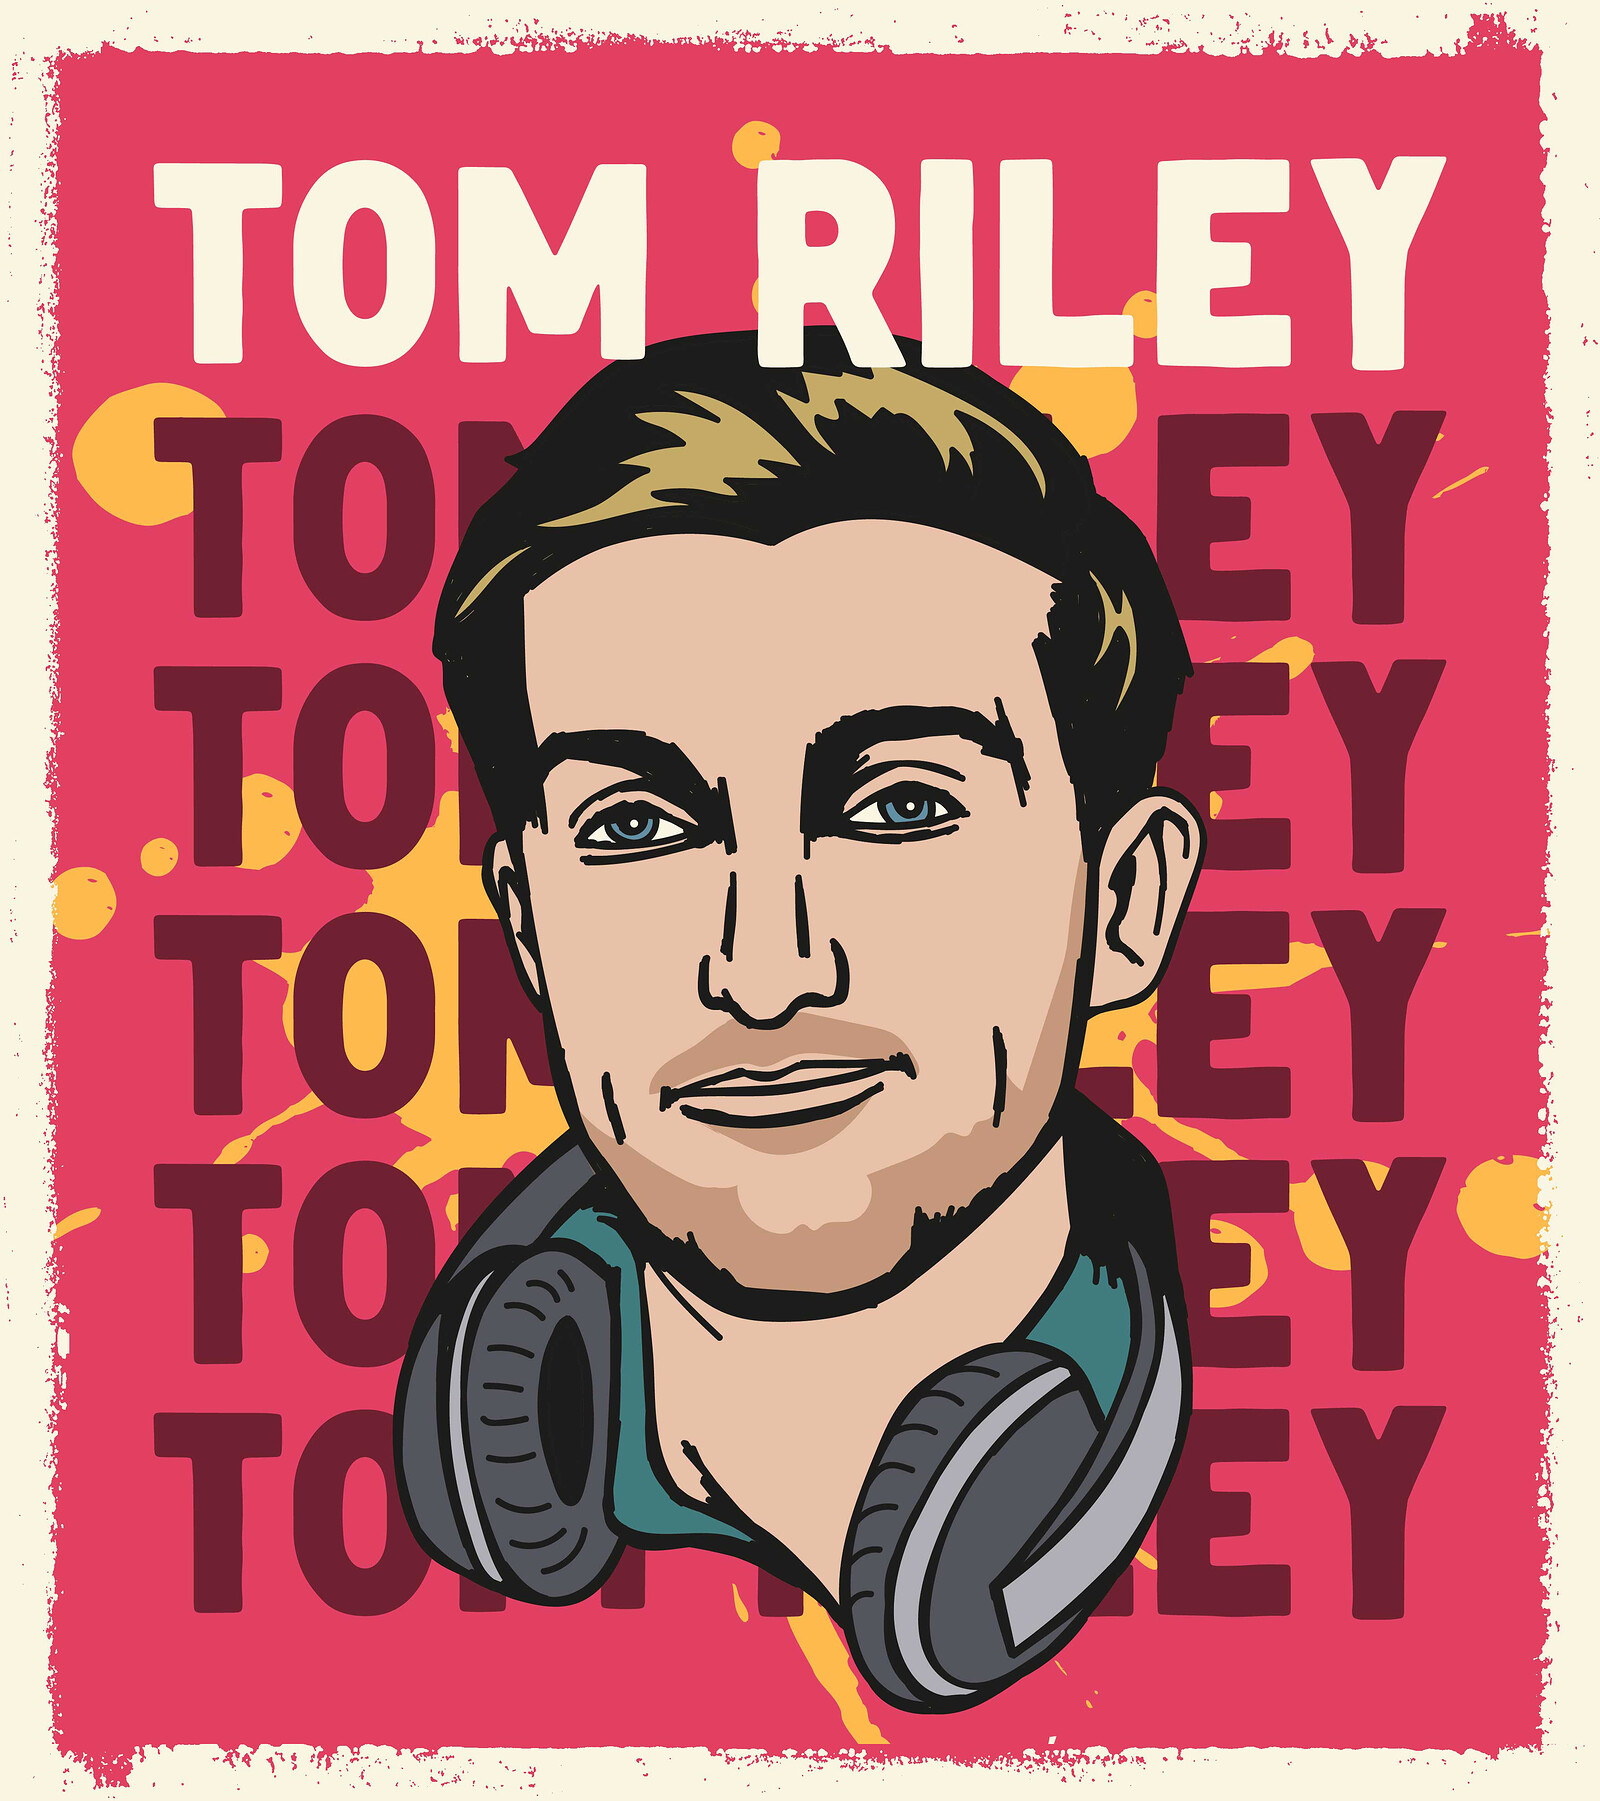 DJ Tom Riley at No. 51s